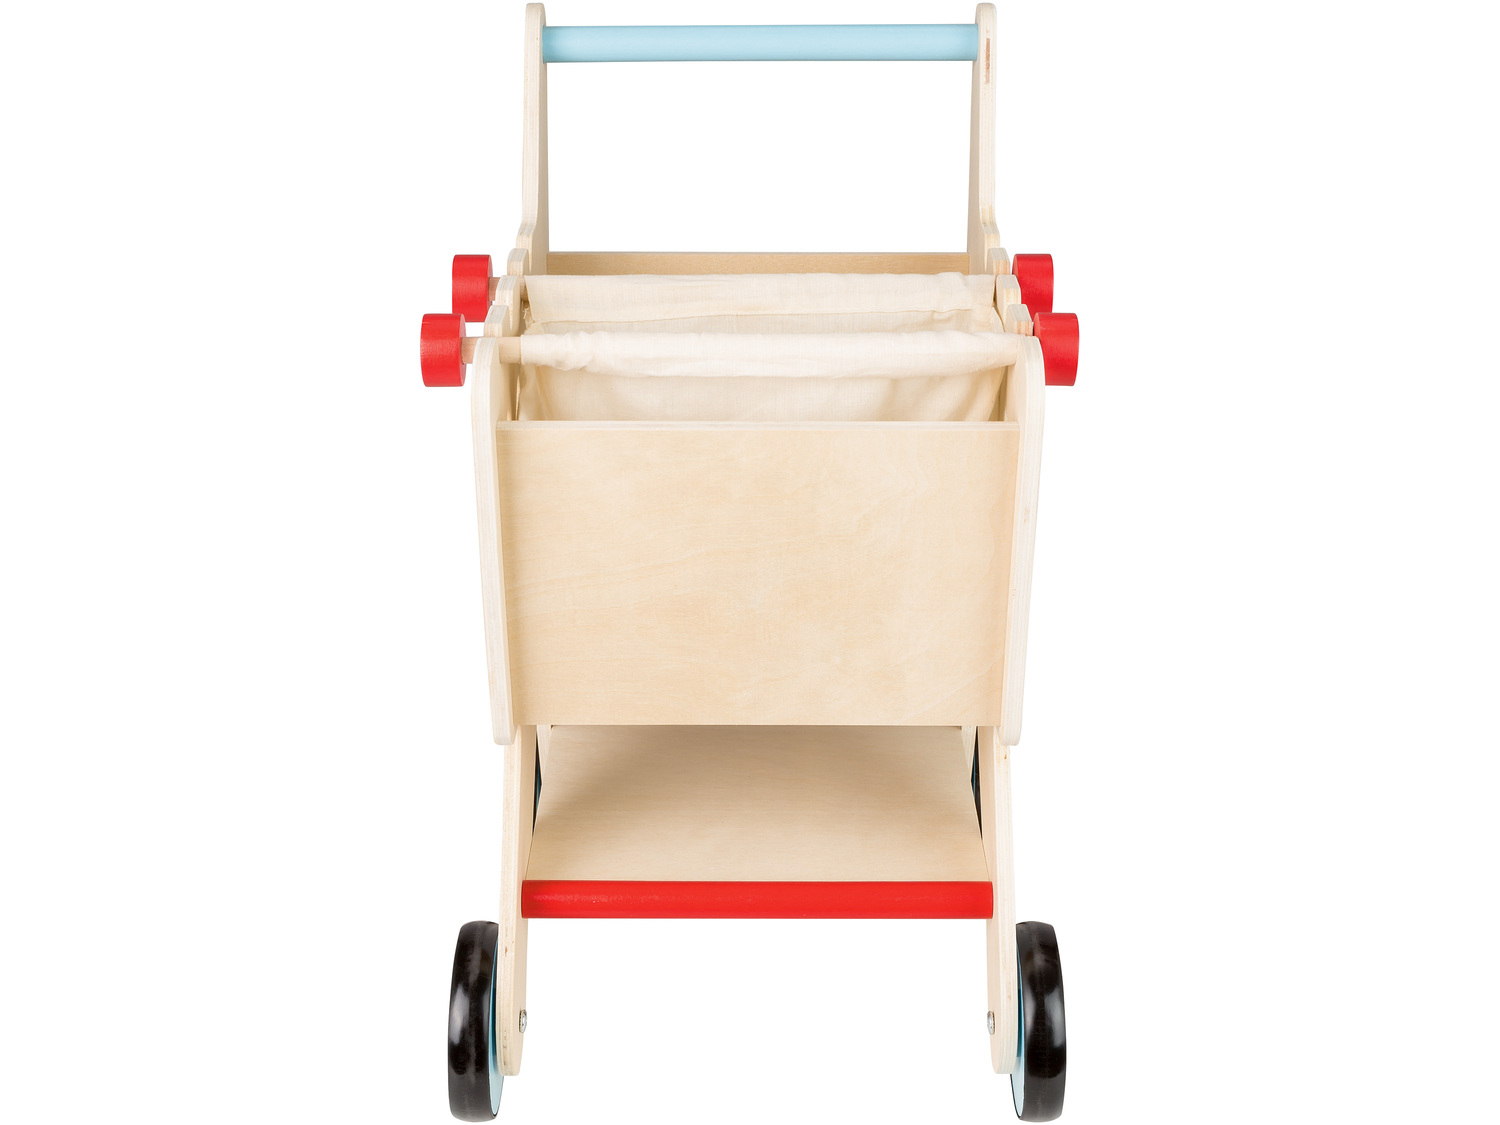 Zestaw do zabawy Playtive, cena 89,90 PLN 
wózek na zakupy 
- wymiary: ok. 39 x ...